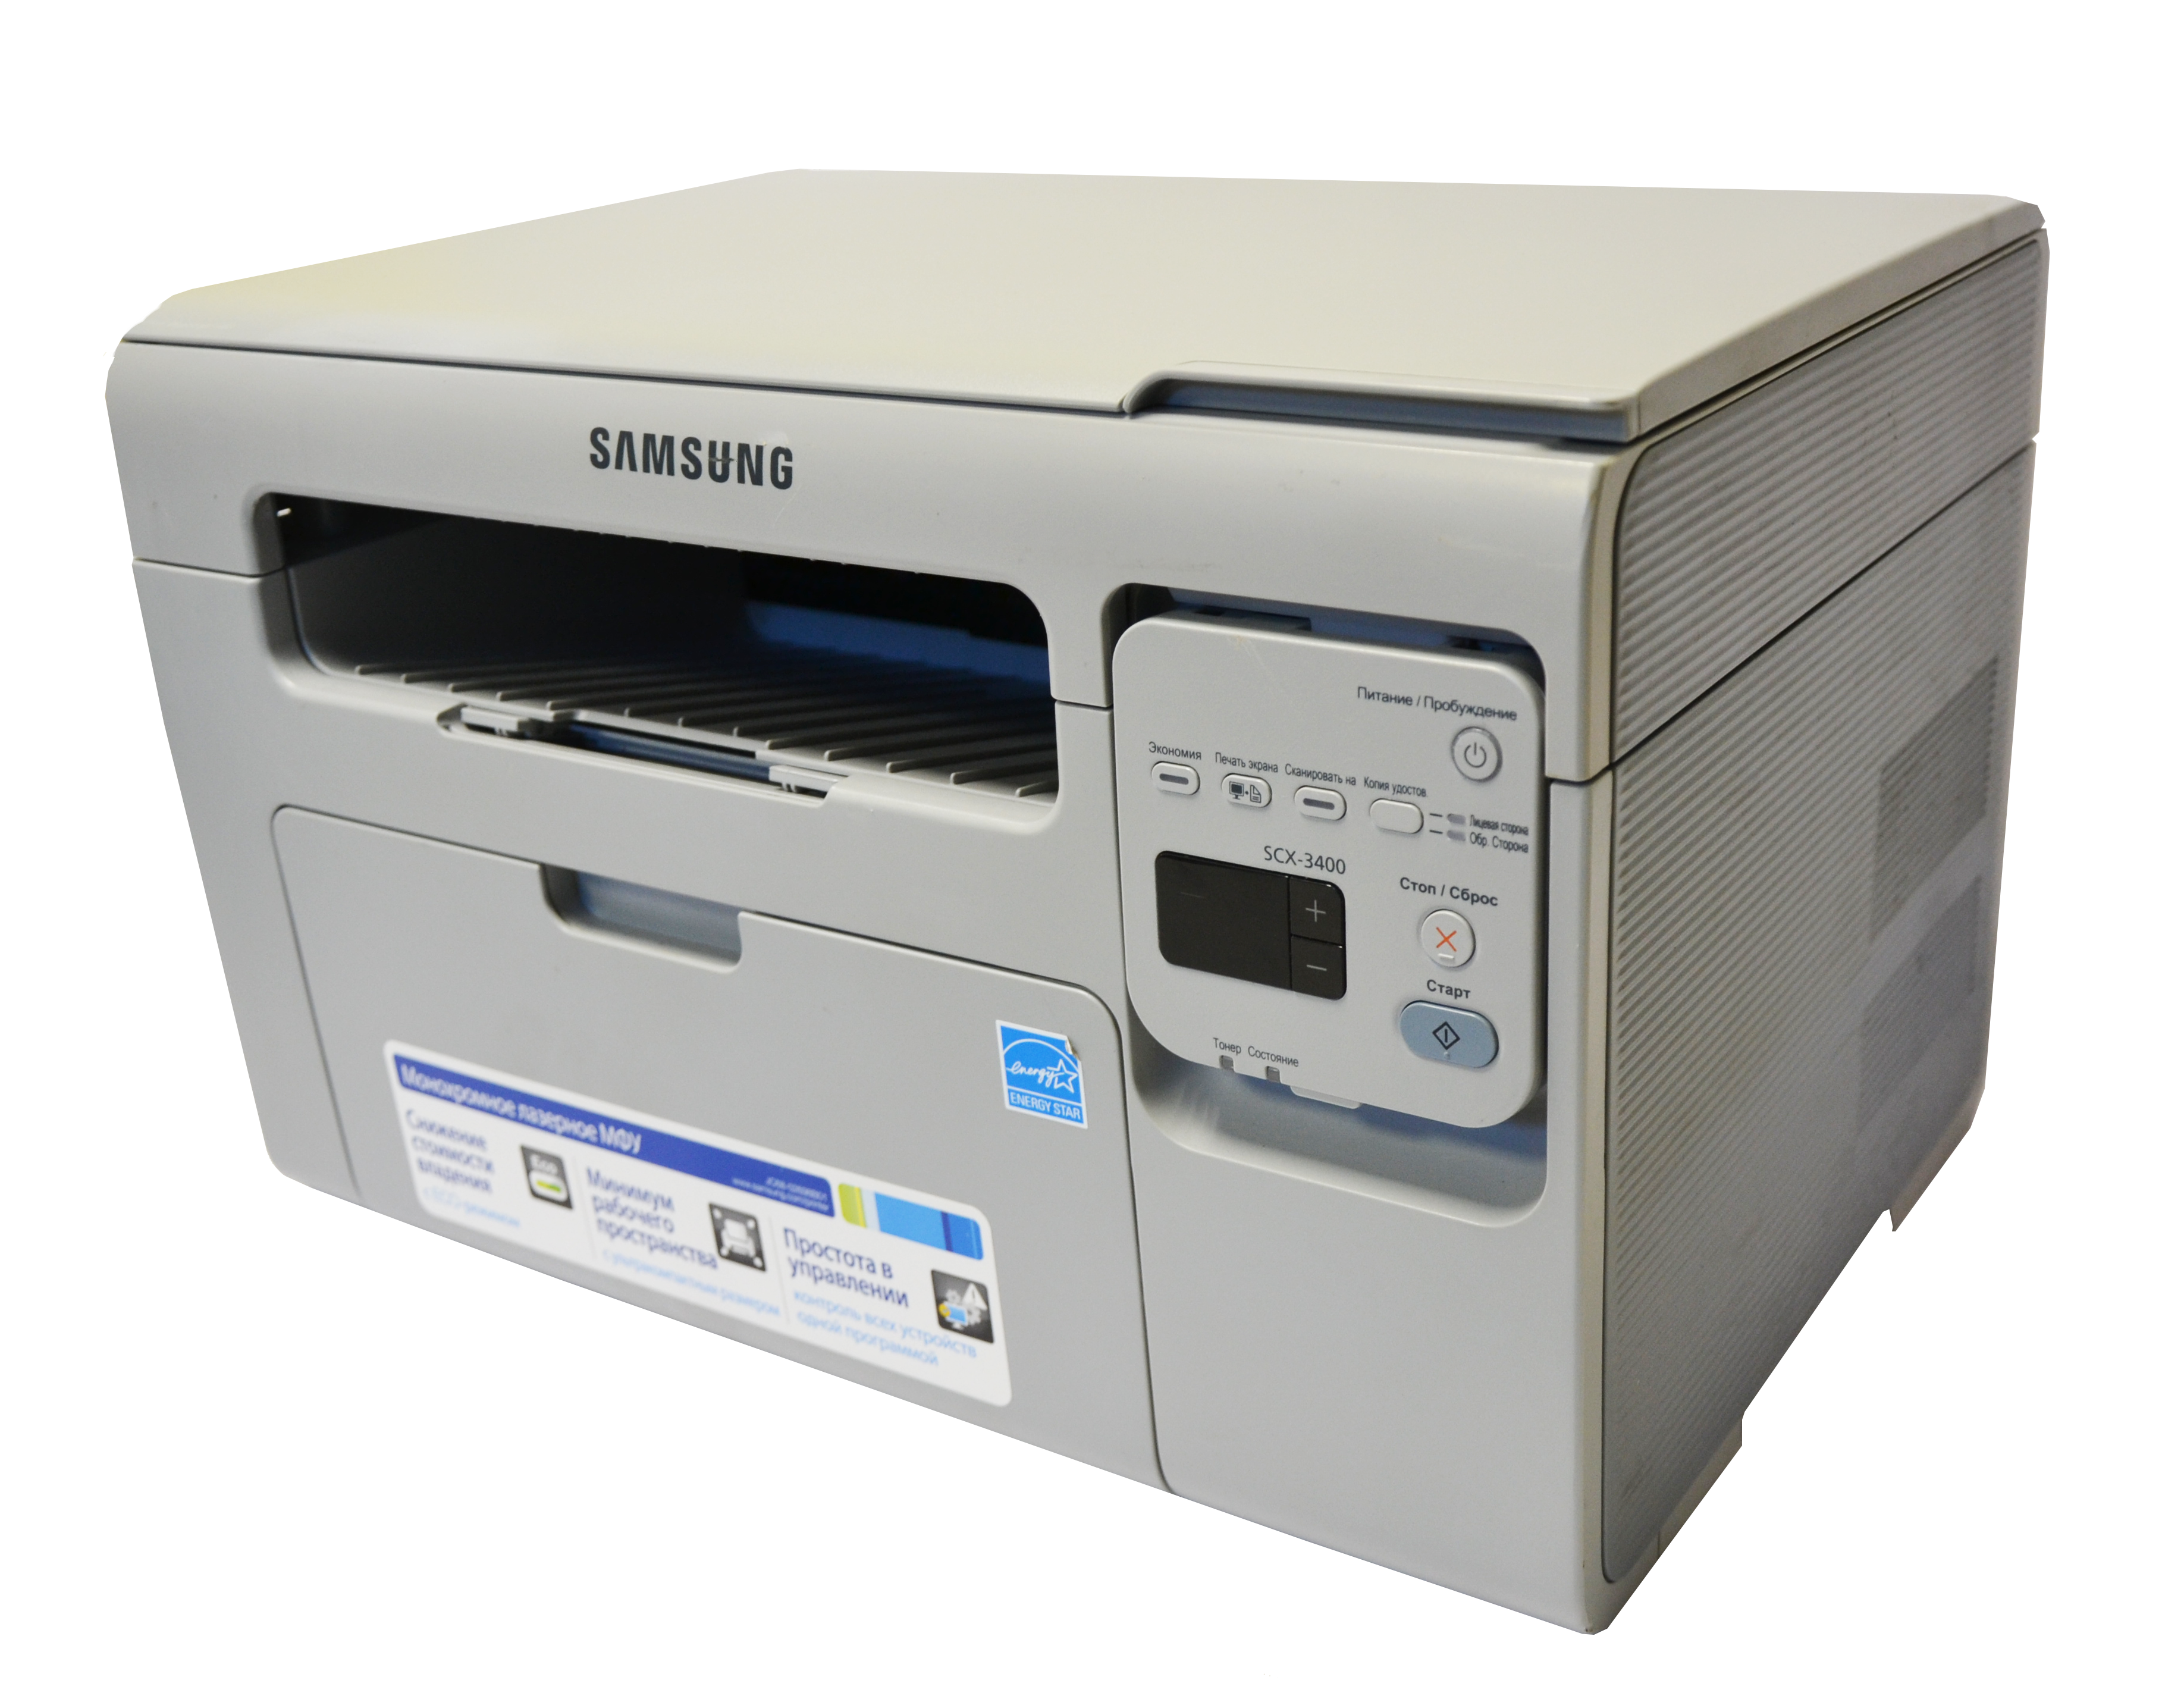 Samsung scx 3400 series. Принтер самсунг 3400. Самсунг SCX 3400. МФУ Samsung SCX-3400. Samsung Xpress SCX-3400.